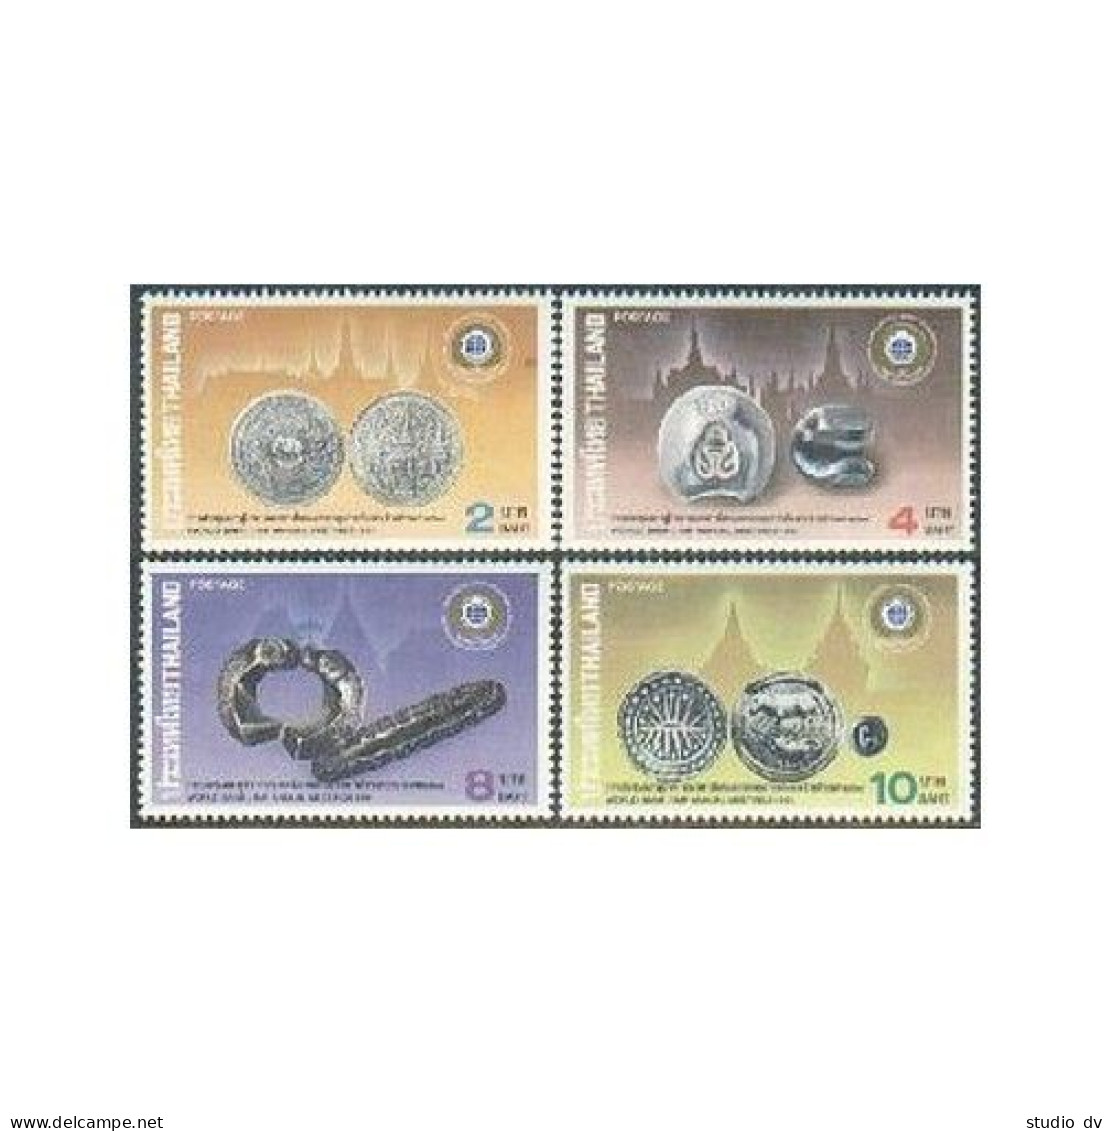 Thailand 1406-1409,MNH.Michel 1427-1430. World Bank 1991.Coins,Animals. - Thaïlande